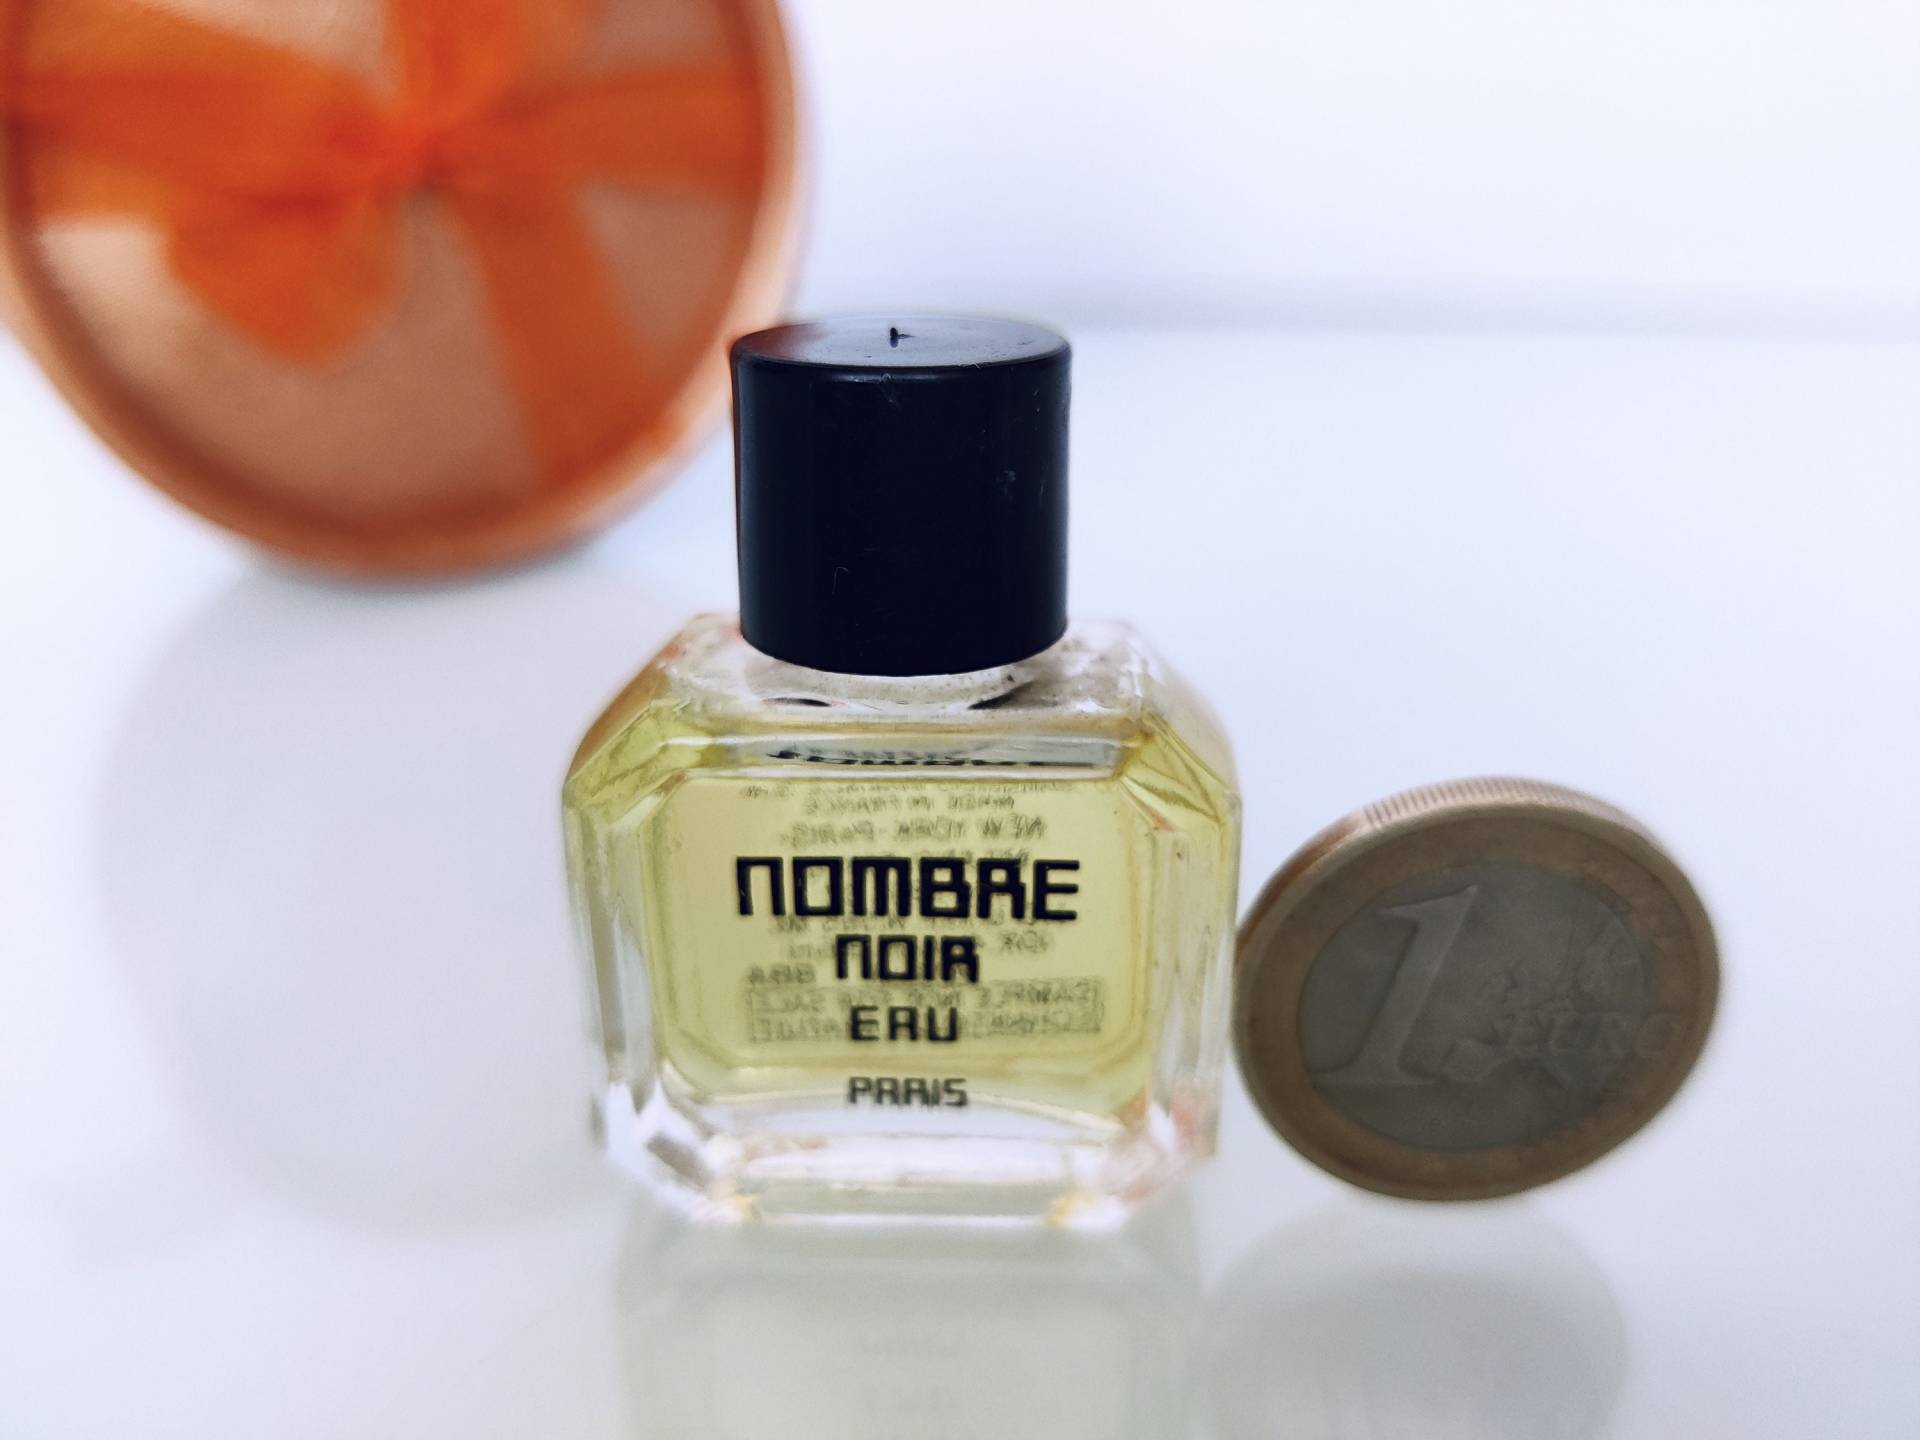 Miniatur ""Nombre Noir" Eau | 1982 Shiseido Perfume Mini 4 Ml/1/4 Us Fl.oz Vintage Women No Box." von MyVintageGadgets